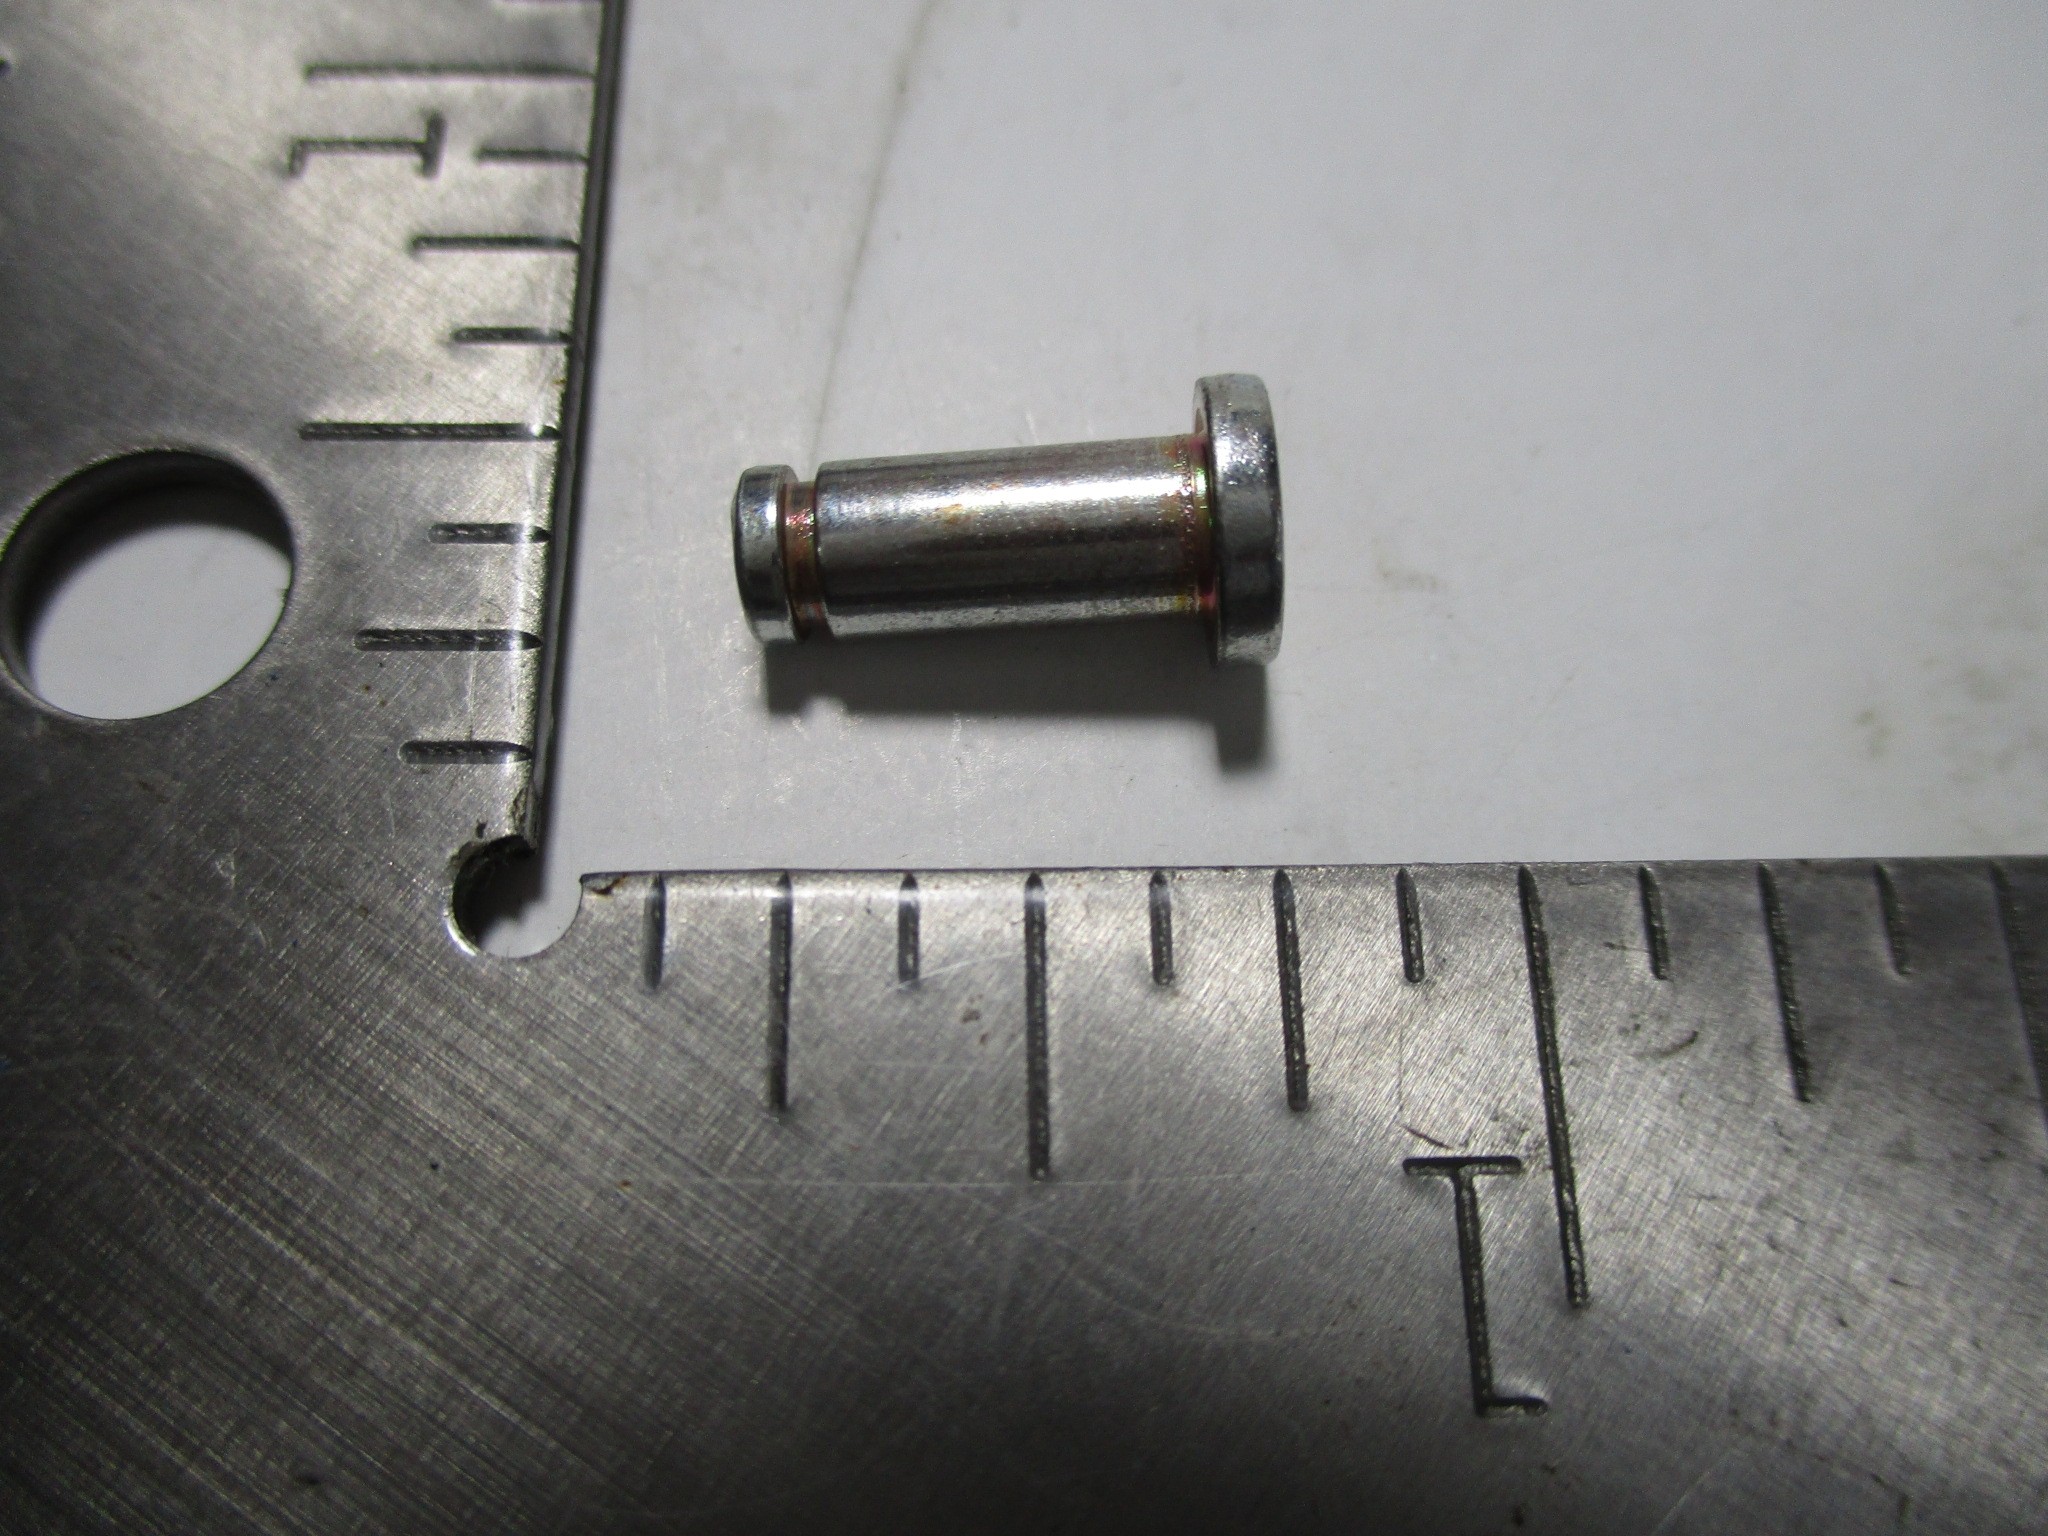 Pin For Power Door Lock Rod